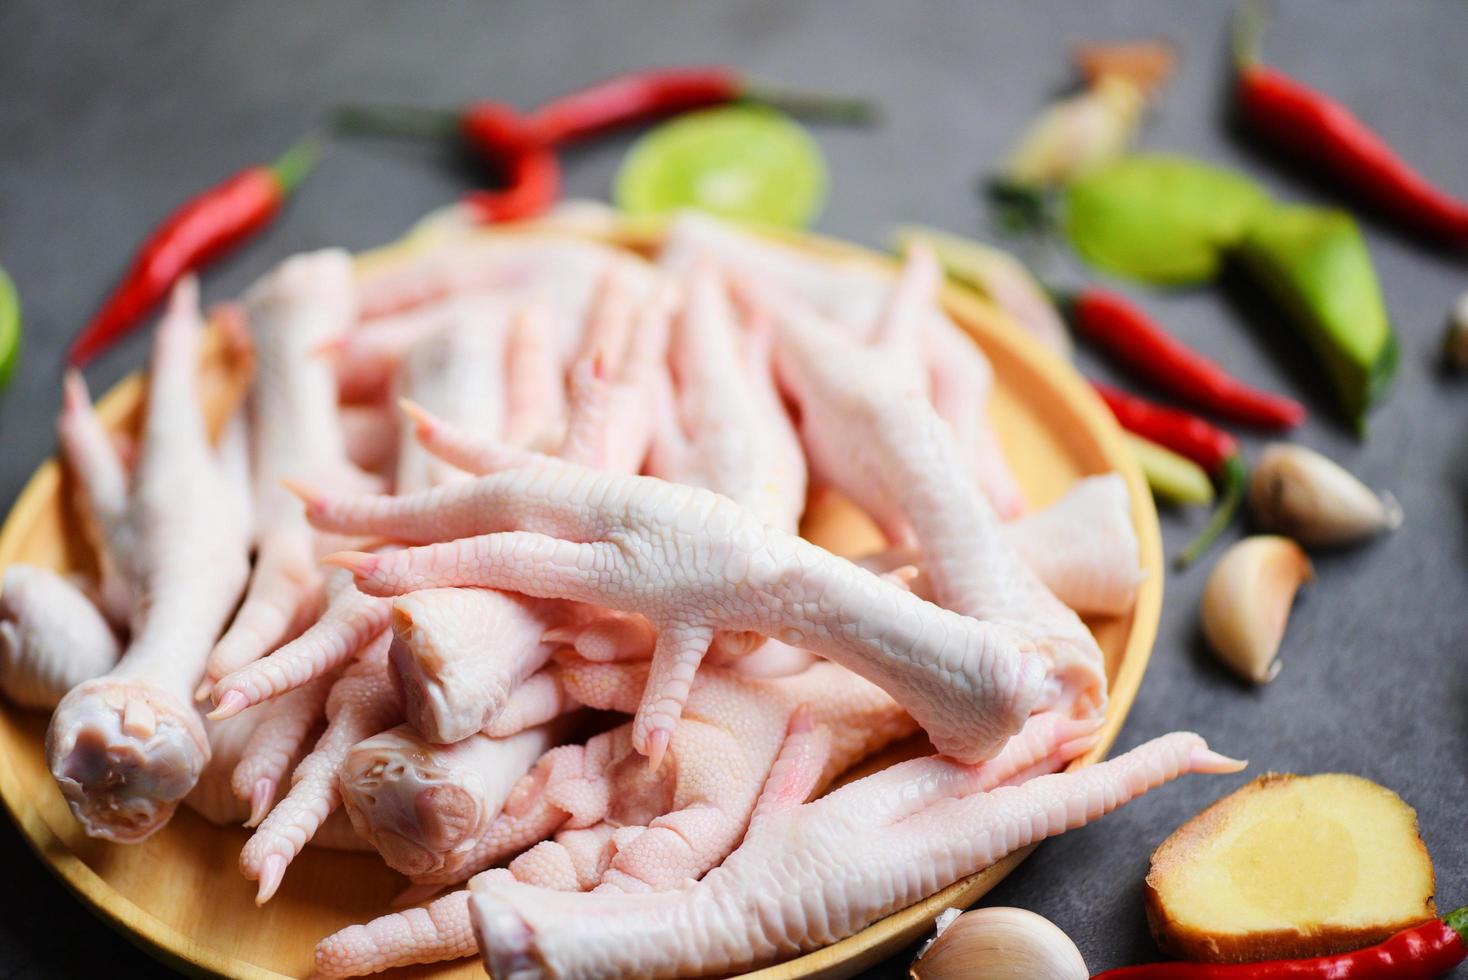 färska råa kycklingfötter för lagad mat på träbord köksbakgrund, kycklingfötter på tallrik foto